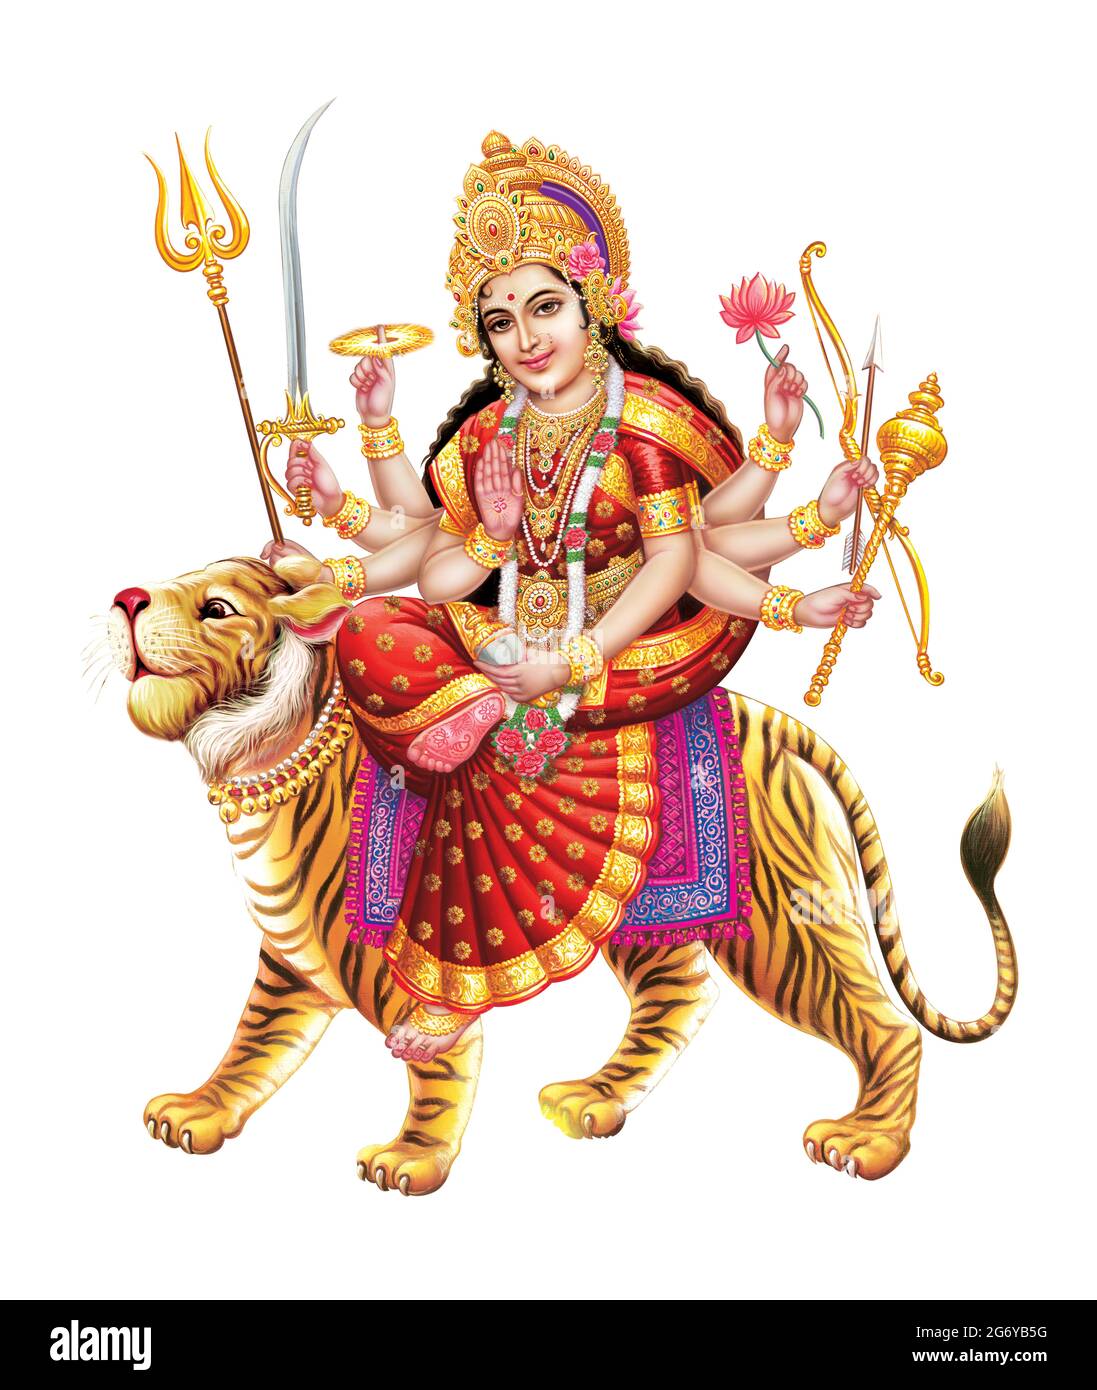 Jai Mata Di, Goddess Durga Stock Photography from a printing house Stock  Photo - Alamy